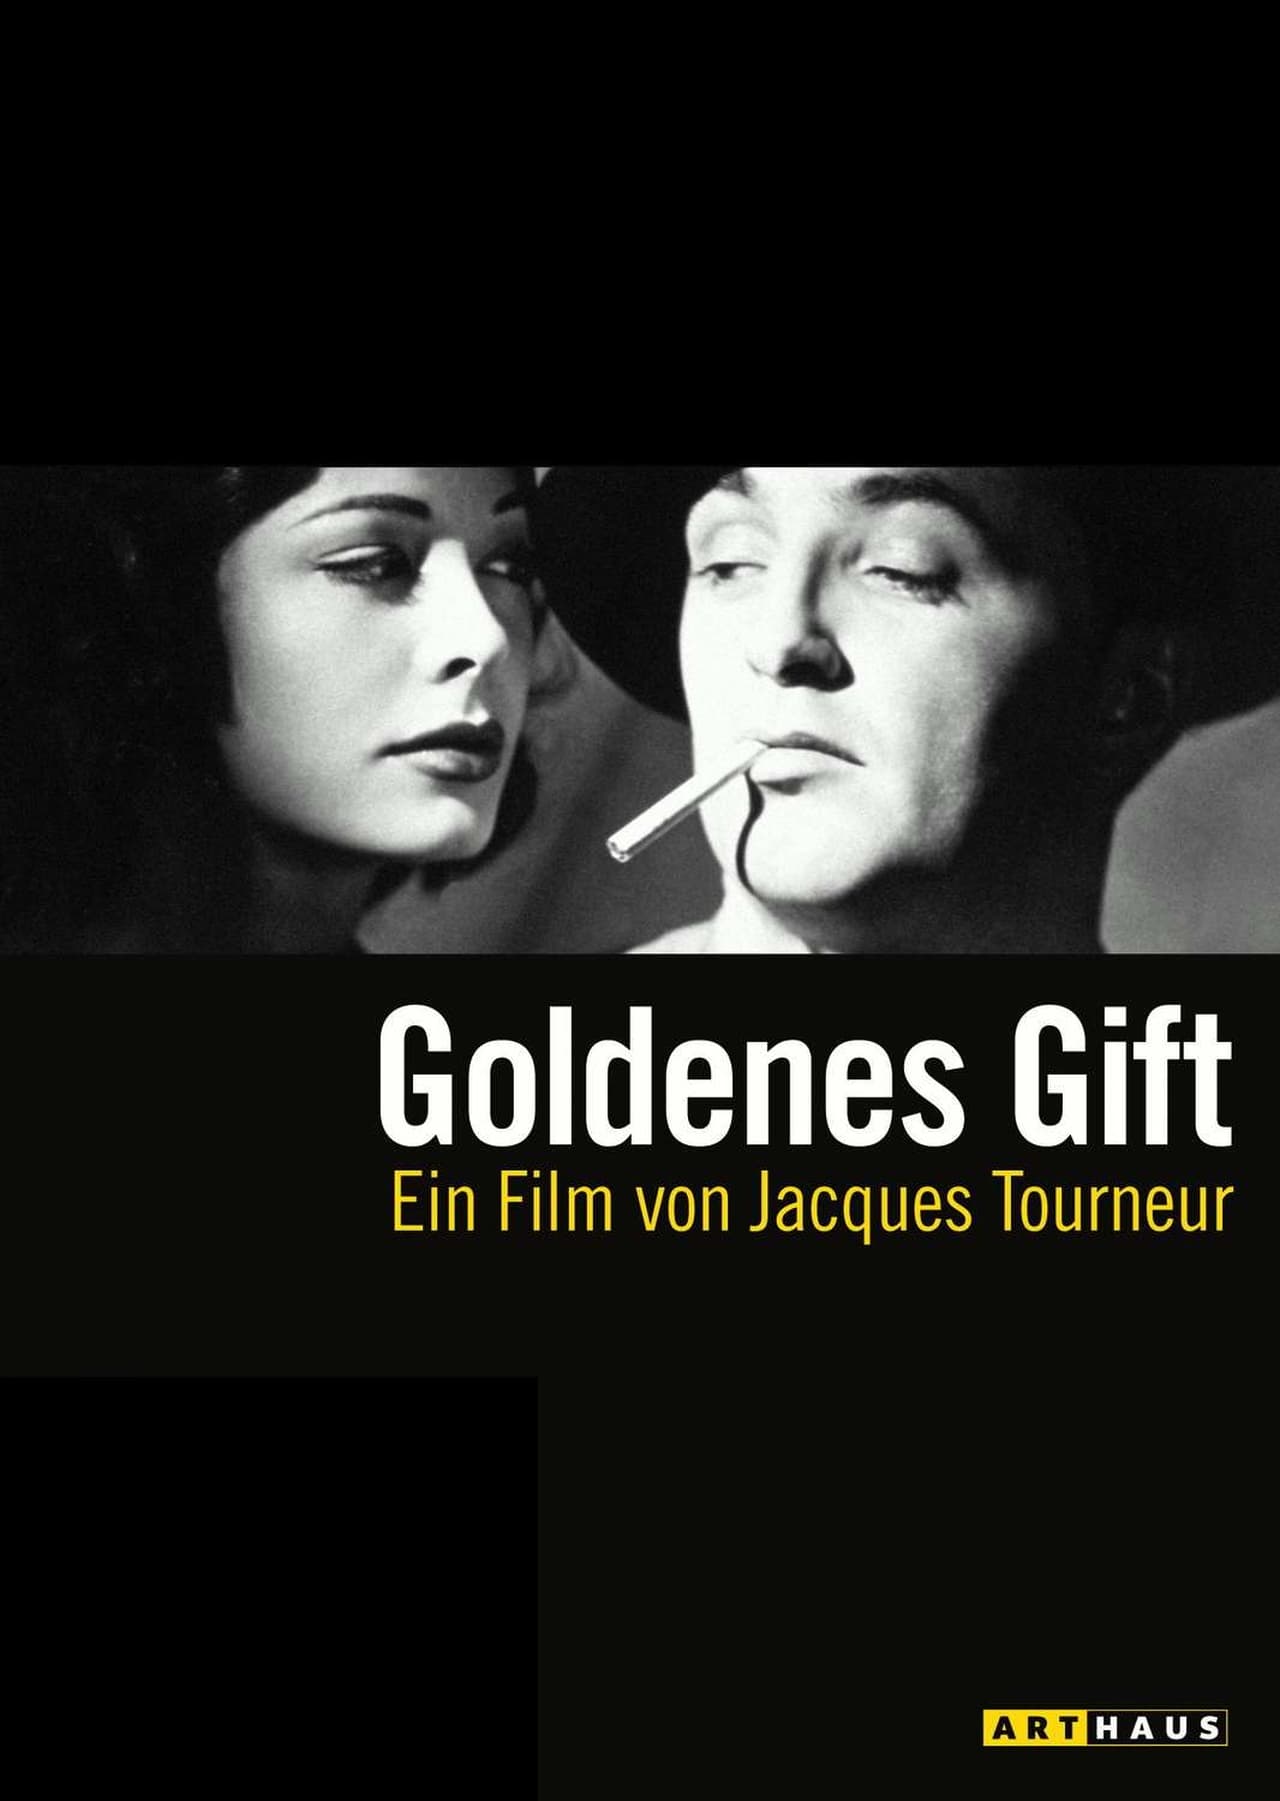 Poster Goldenes Gift